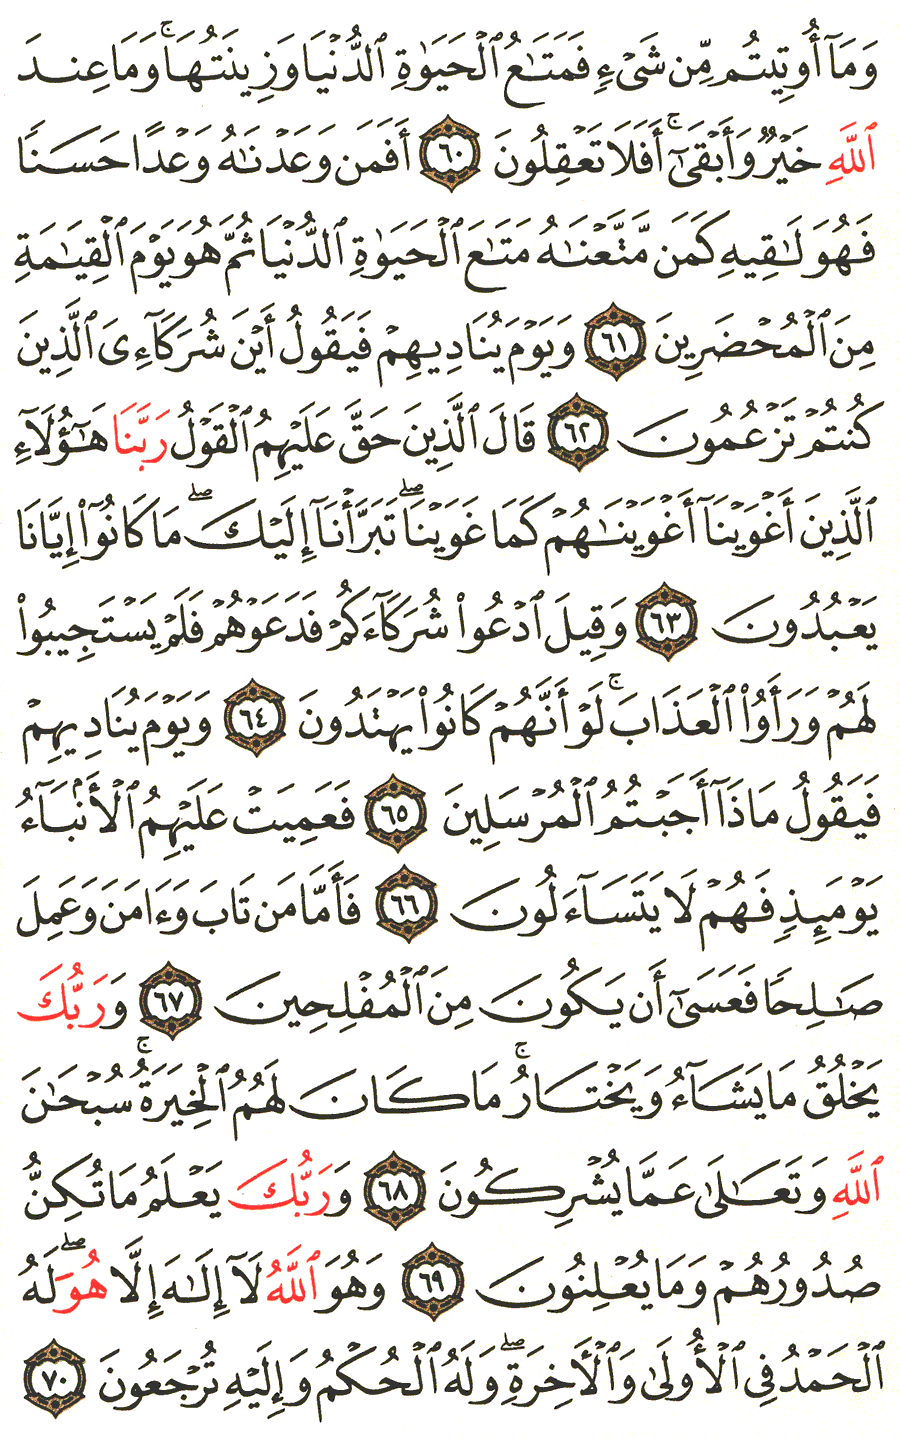 الصفحة 393 من القرآن الكريم